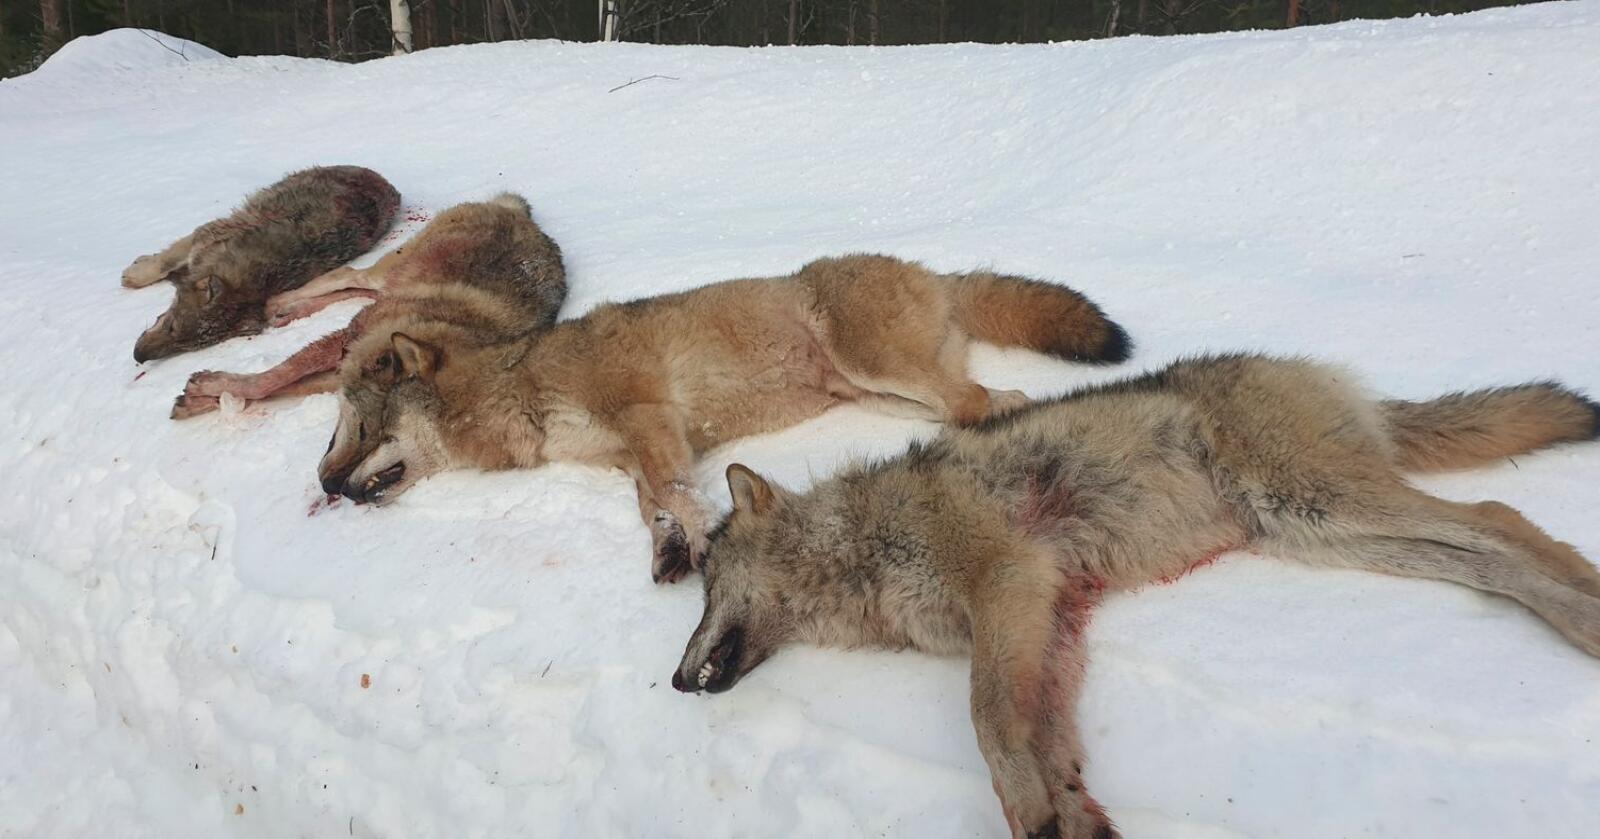 Fire av de seks ulvene i Letjennareviret i Elverum i Hedmark ble skutt på første dag av lisensjakten tilbake i 2020. Det var lederparet og to årsvalper som ble tatt ut, mens ytterligere to valper aldri ble funnet. Foto: Statens Natuoppsyn / NTB